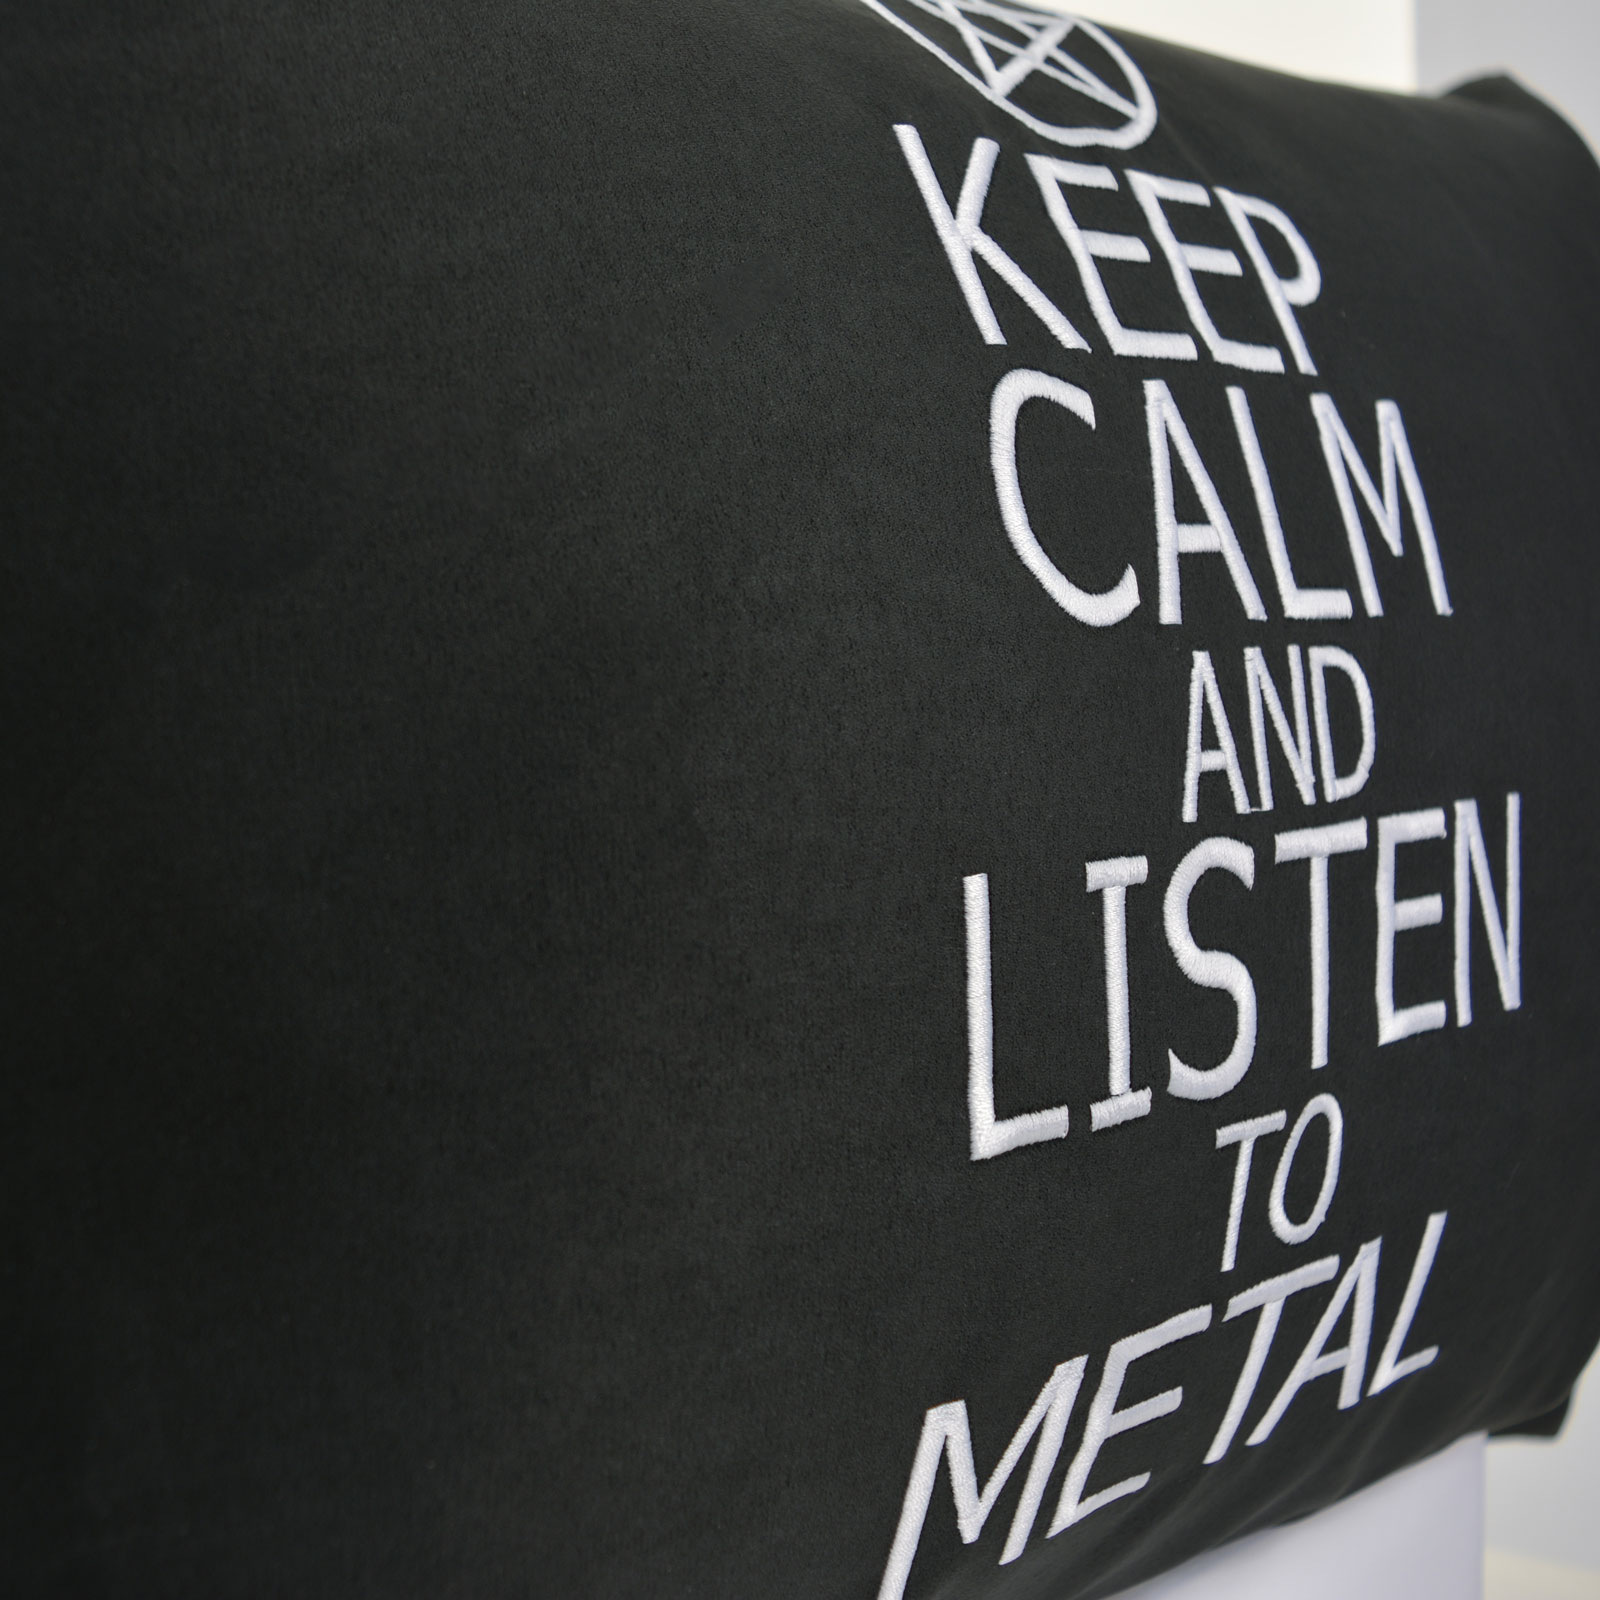 Listen to Metal